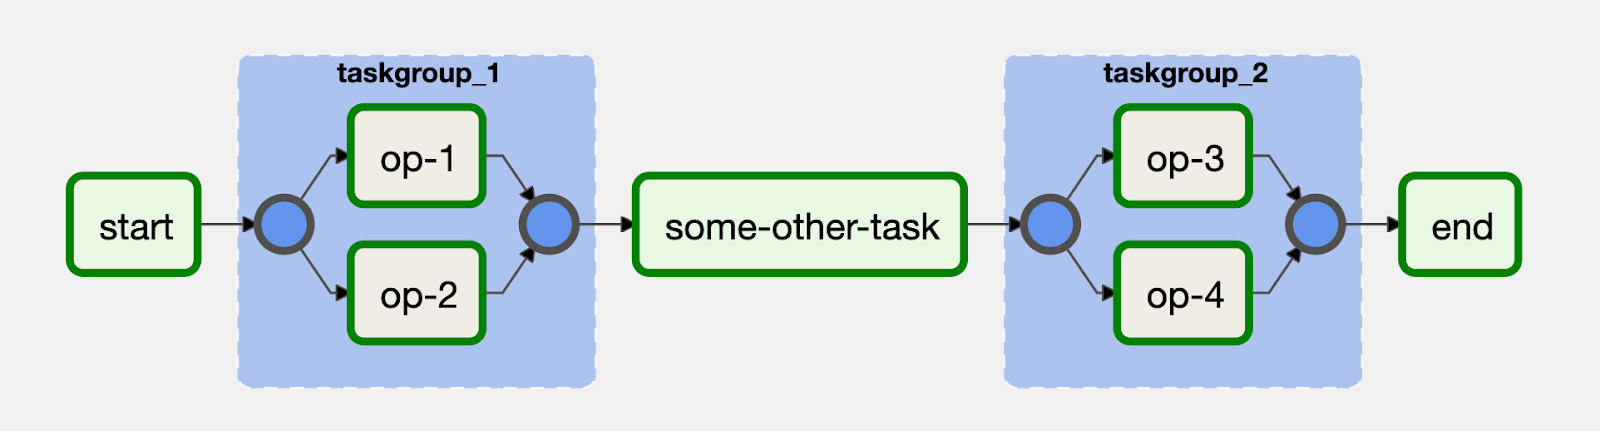 Les tâches peuvent être regroupées visuellement dans l'interface utilisateur avec l'opérateur TaskGroup dans Airflow 2.